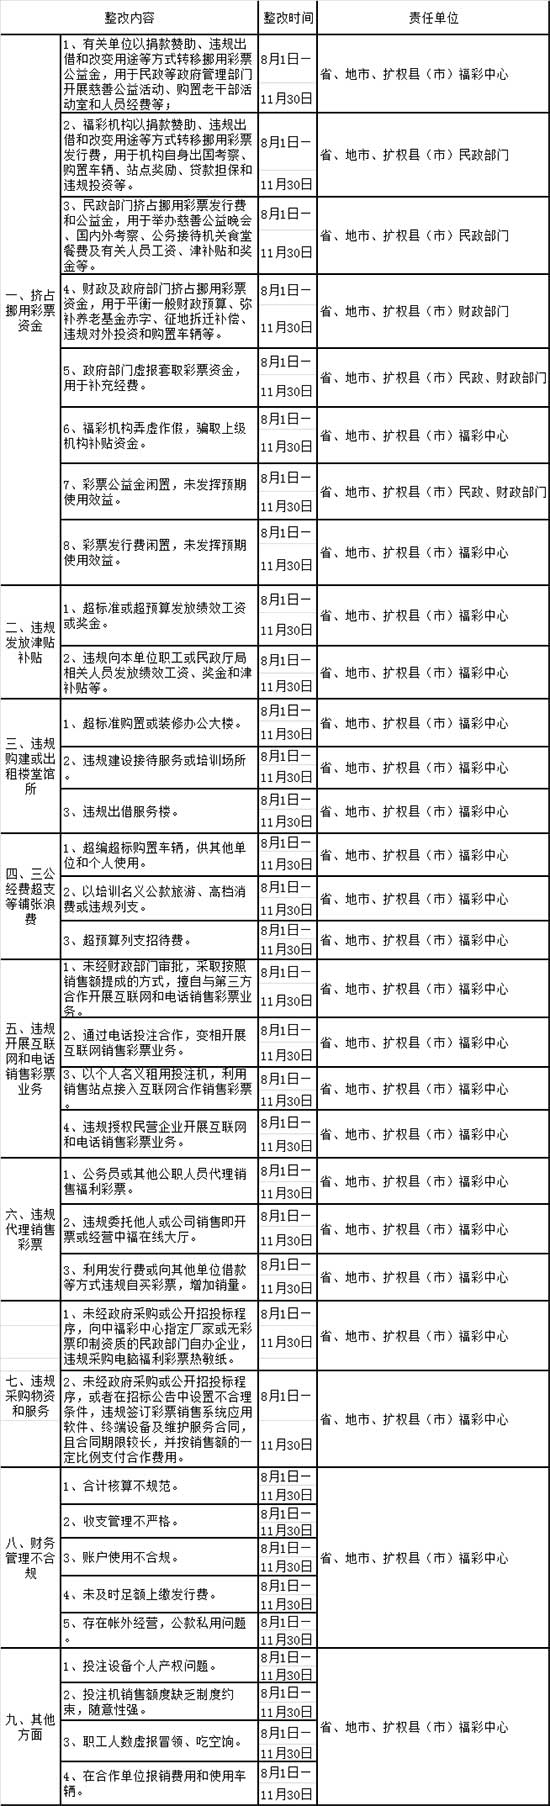 河北省福利彩票发行管理中心”阳光福彩“专项行动实施内容